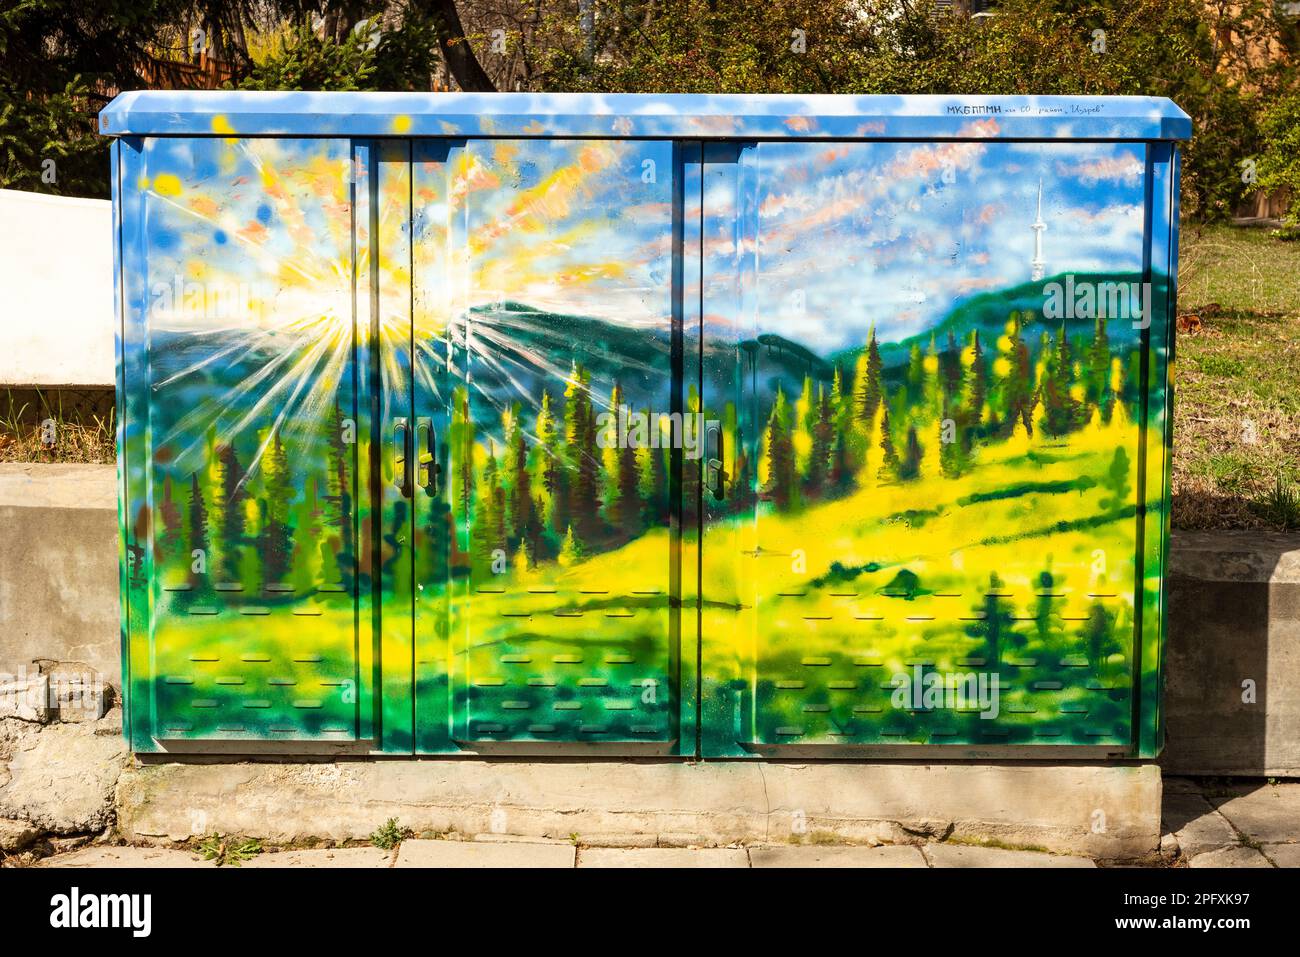 Straßenkunst lebendige Landschaftsmalerei auf einem elektrischen Straßenschrank in Sofia, Bulgarien, Osteuropa, Balkan, EU Stockfoto